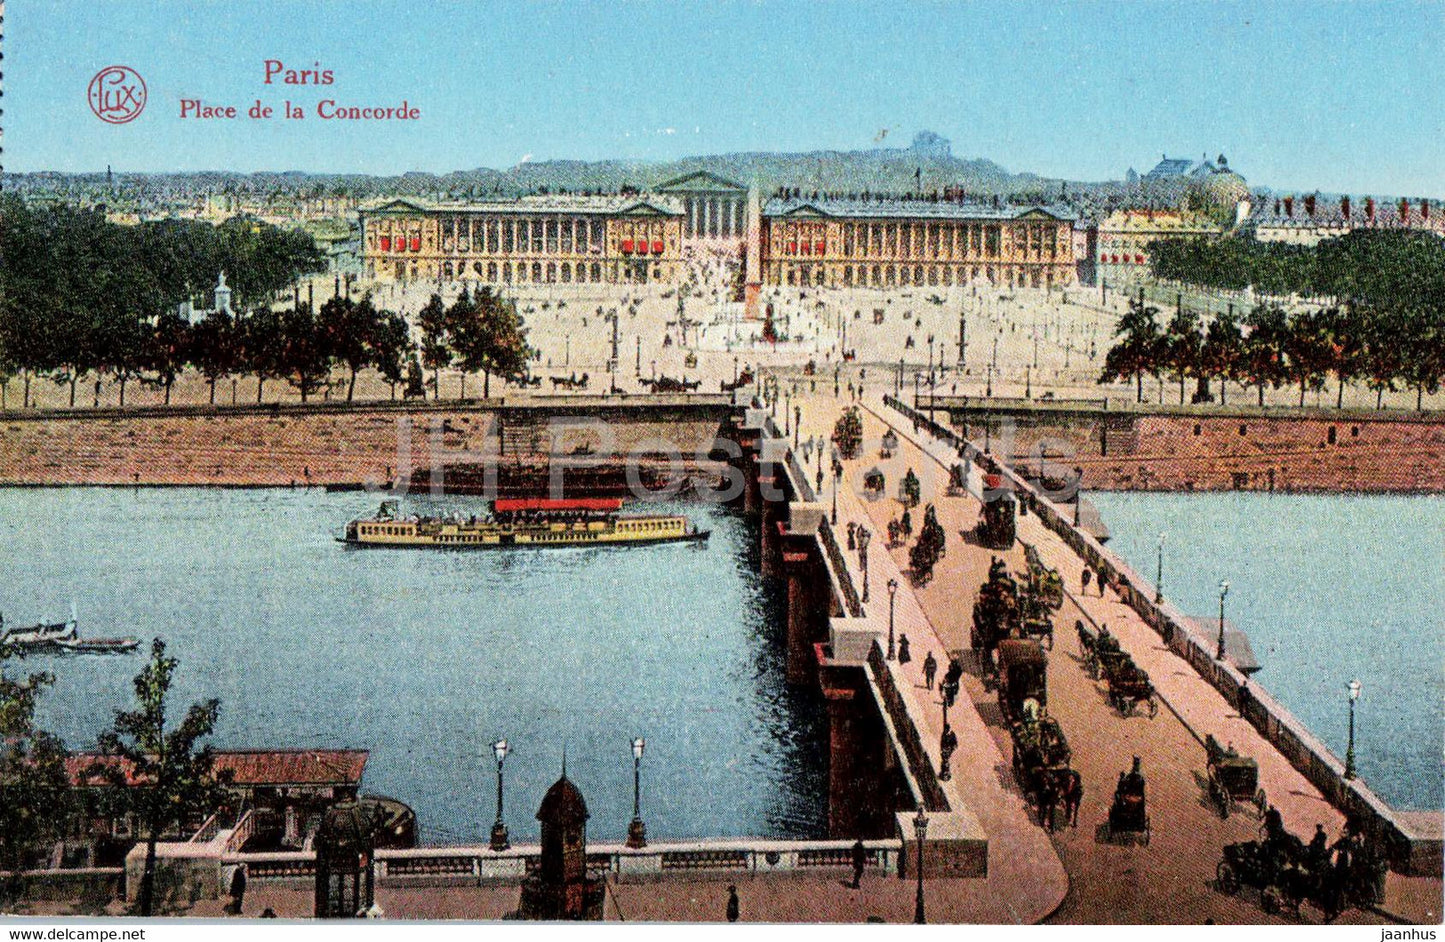 Paris - Place de la Concorde - bridge - Ser 112 - old postcard - France - unused - JH Postcards